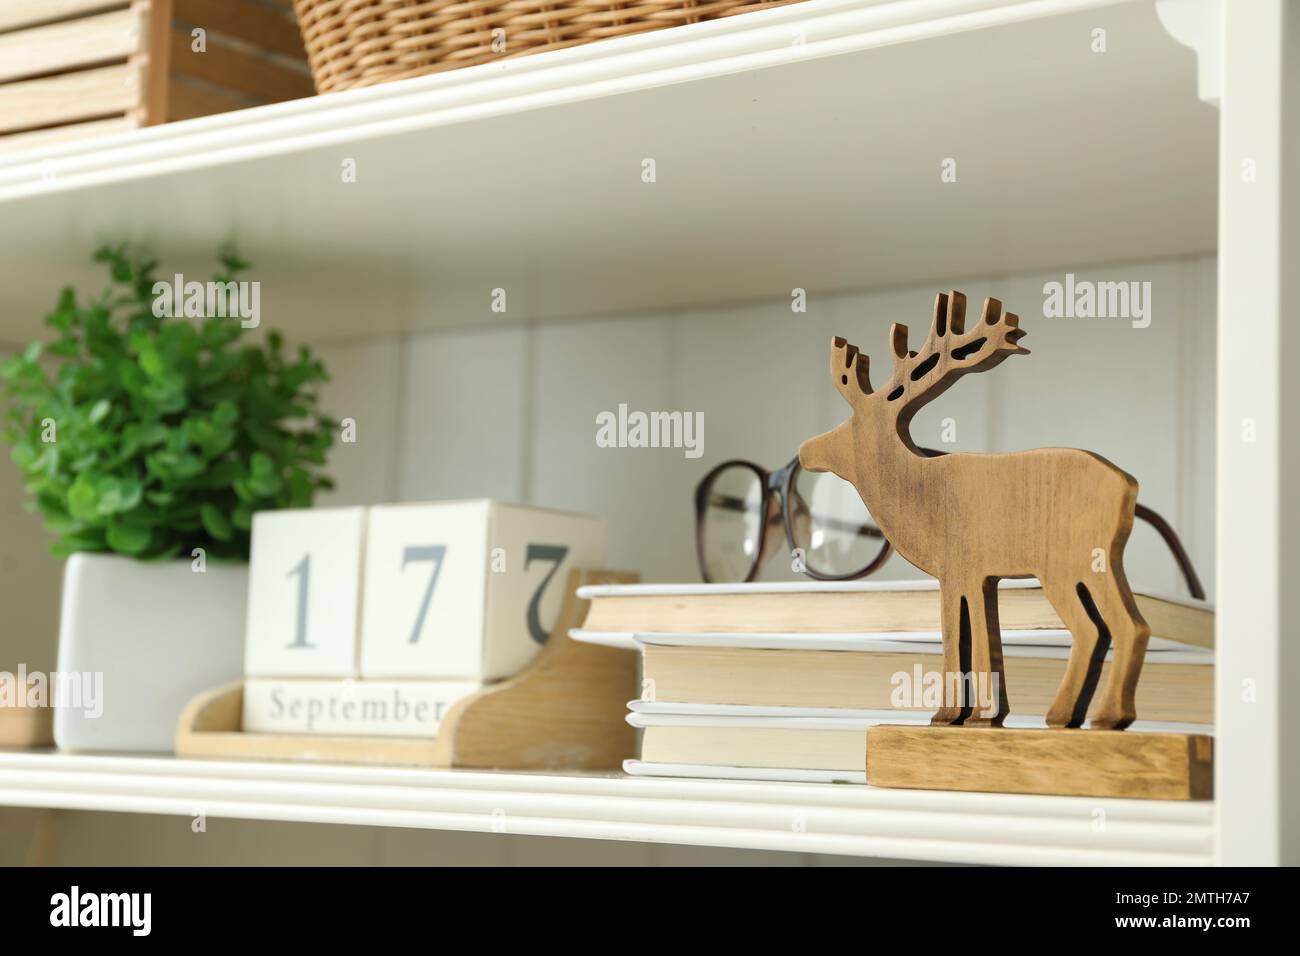 Estantería blanca con figura de ciervo de madera, libros y calendario Foto de stock